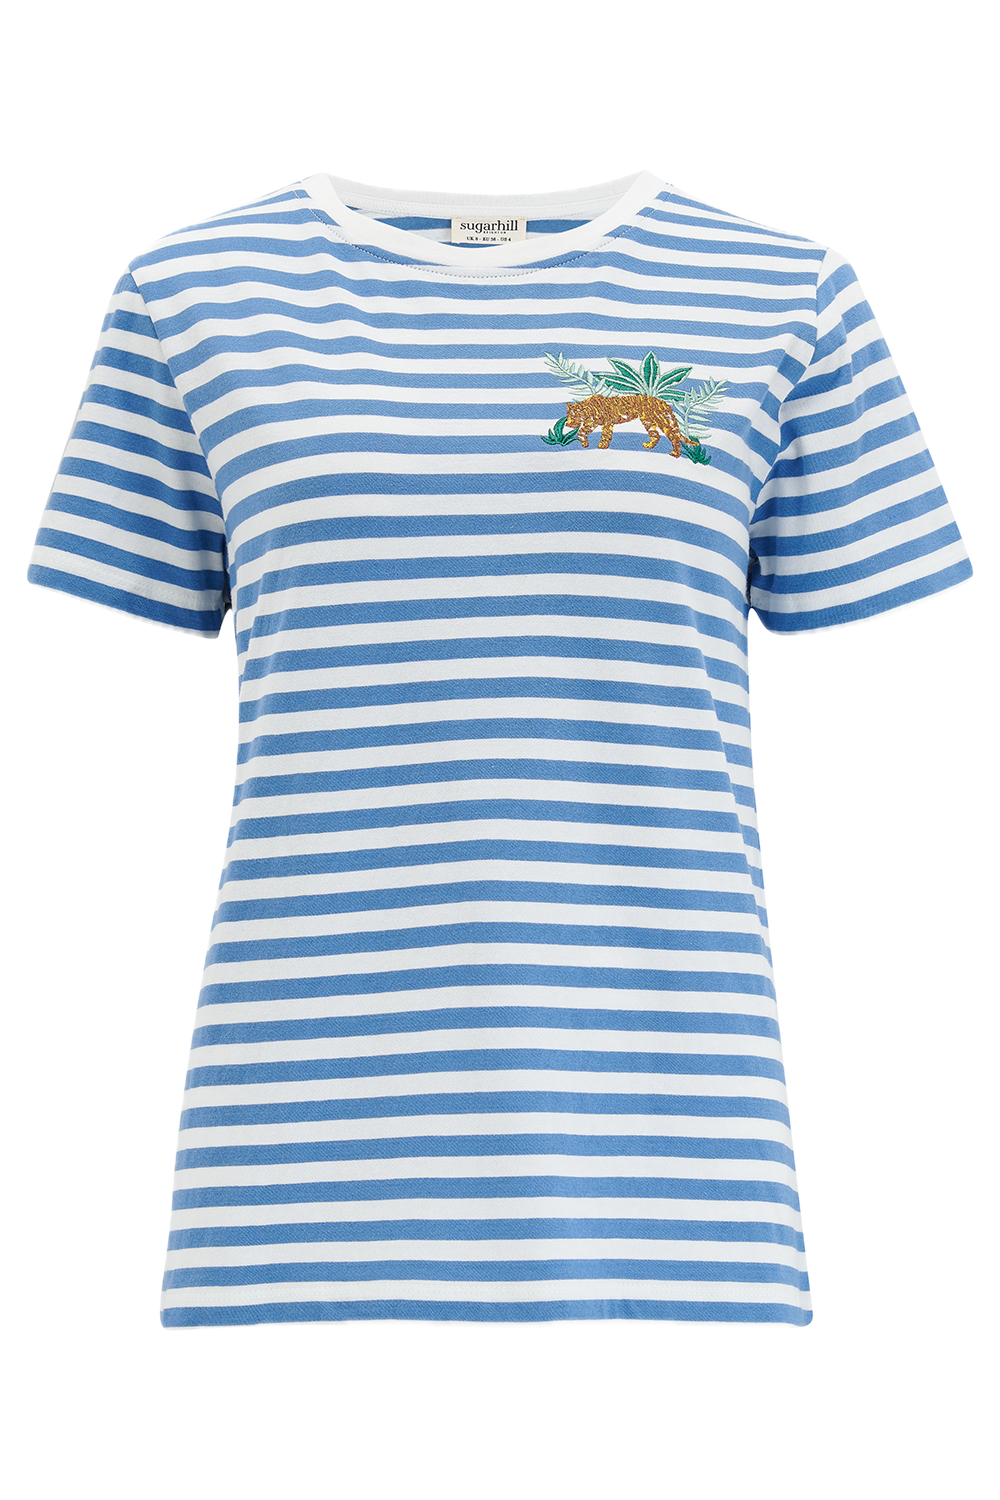 Camiseta Sugarhill Maggie Blue White Tiger Embroidery